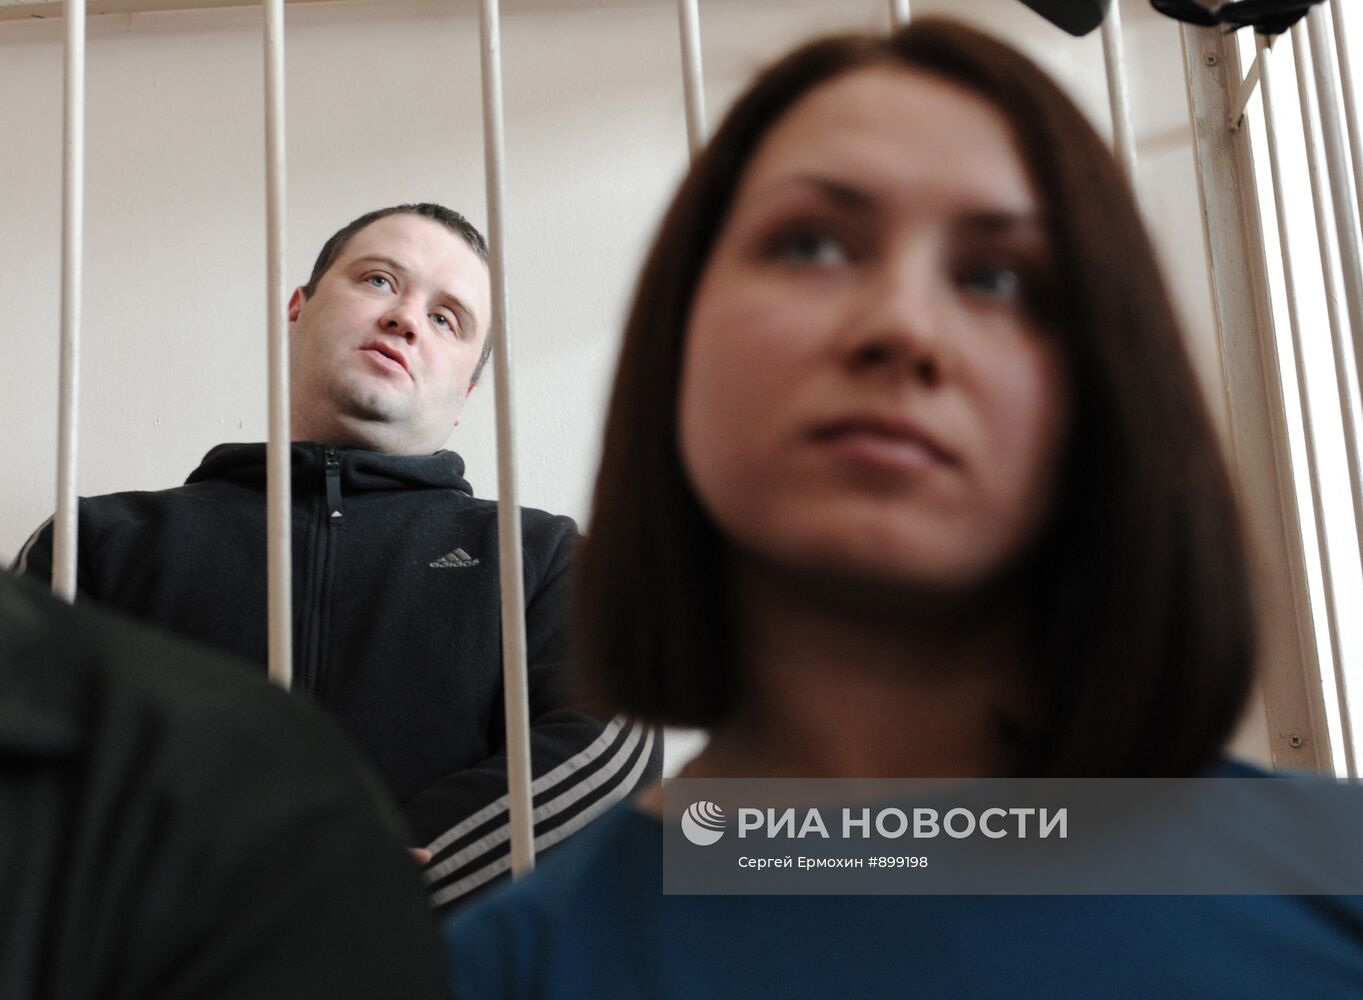 Вынесение приговора бывшему сотруднику милиции Андрею Петрову